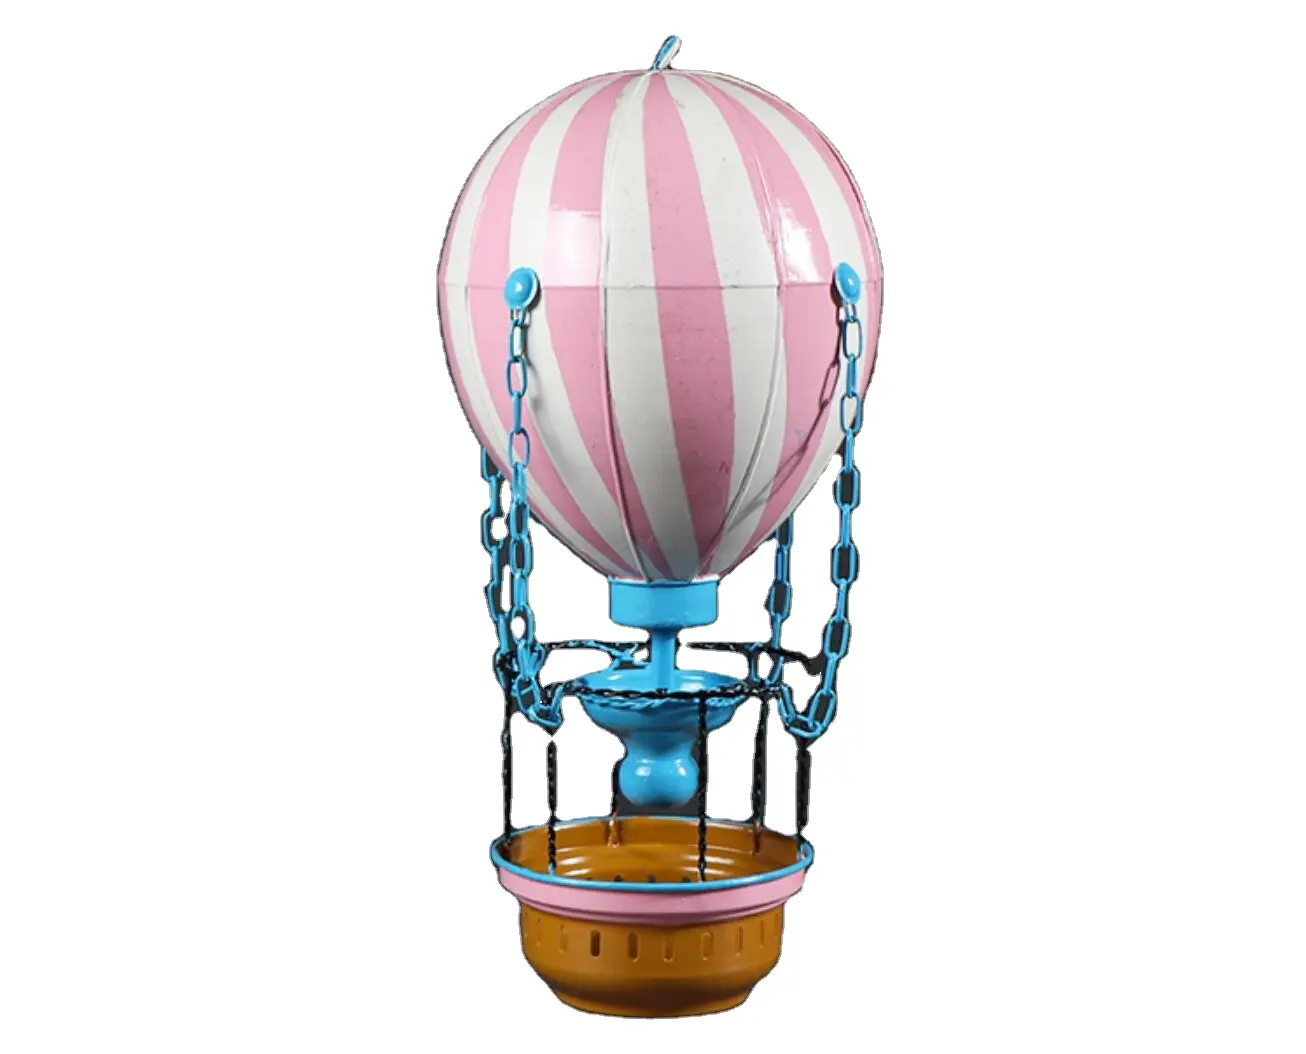 Sculpture gonflable forme ballons hélium tissu brûleur prop utilisé ballon à air chaud à vendre commerce montgolfière décorations